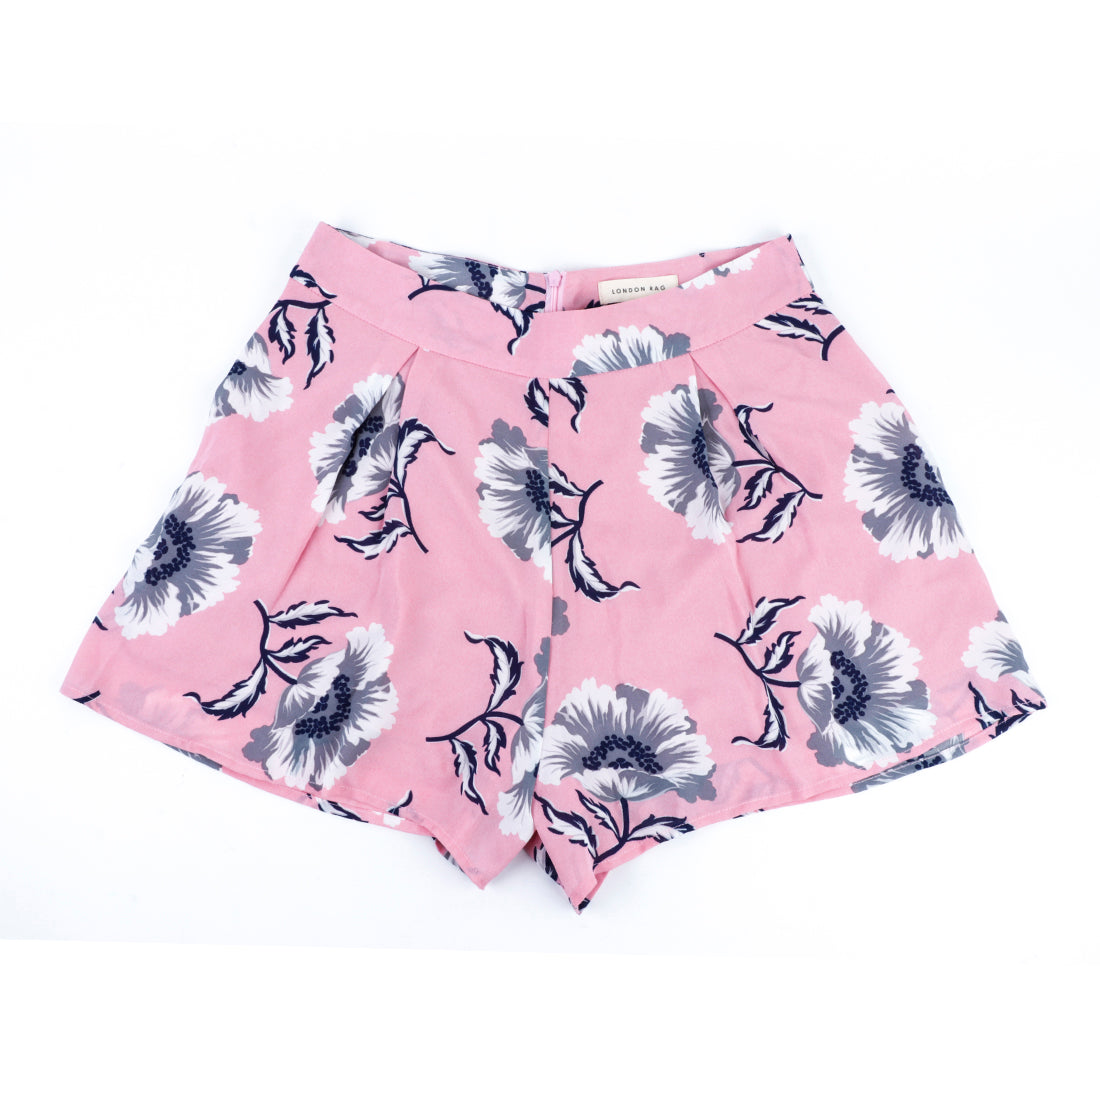 Pink Floral Short Skirt - Pink